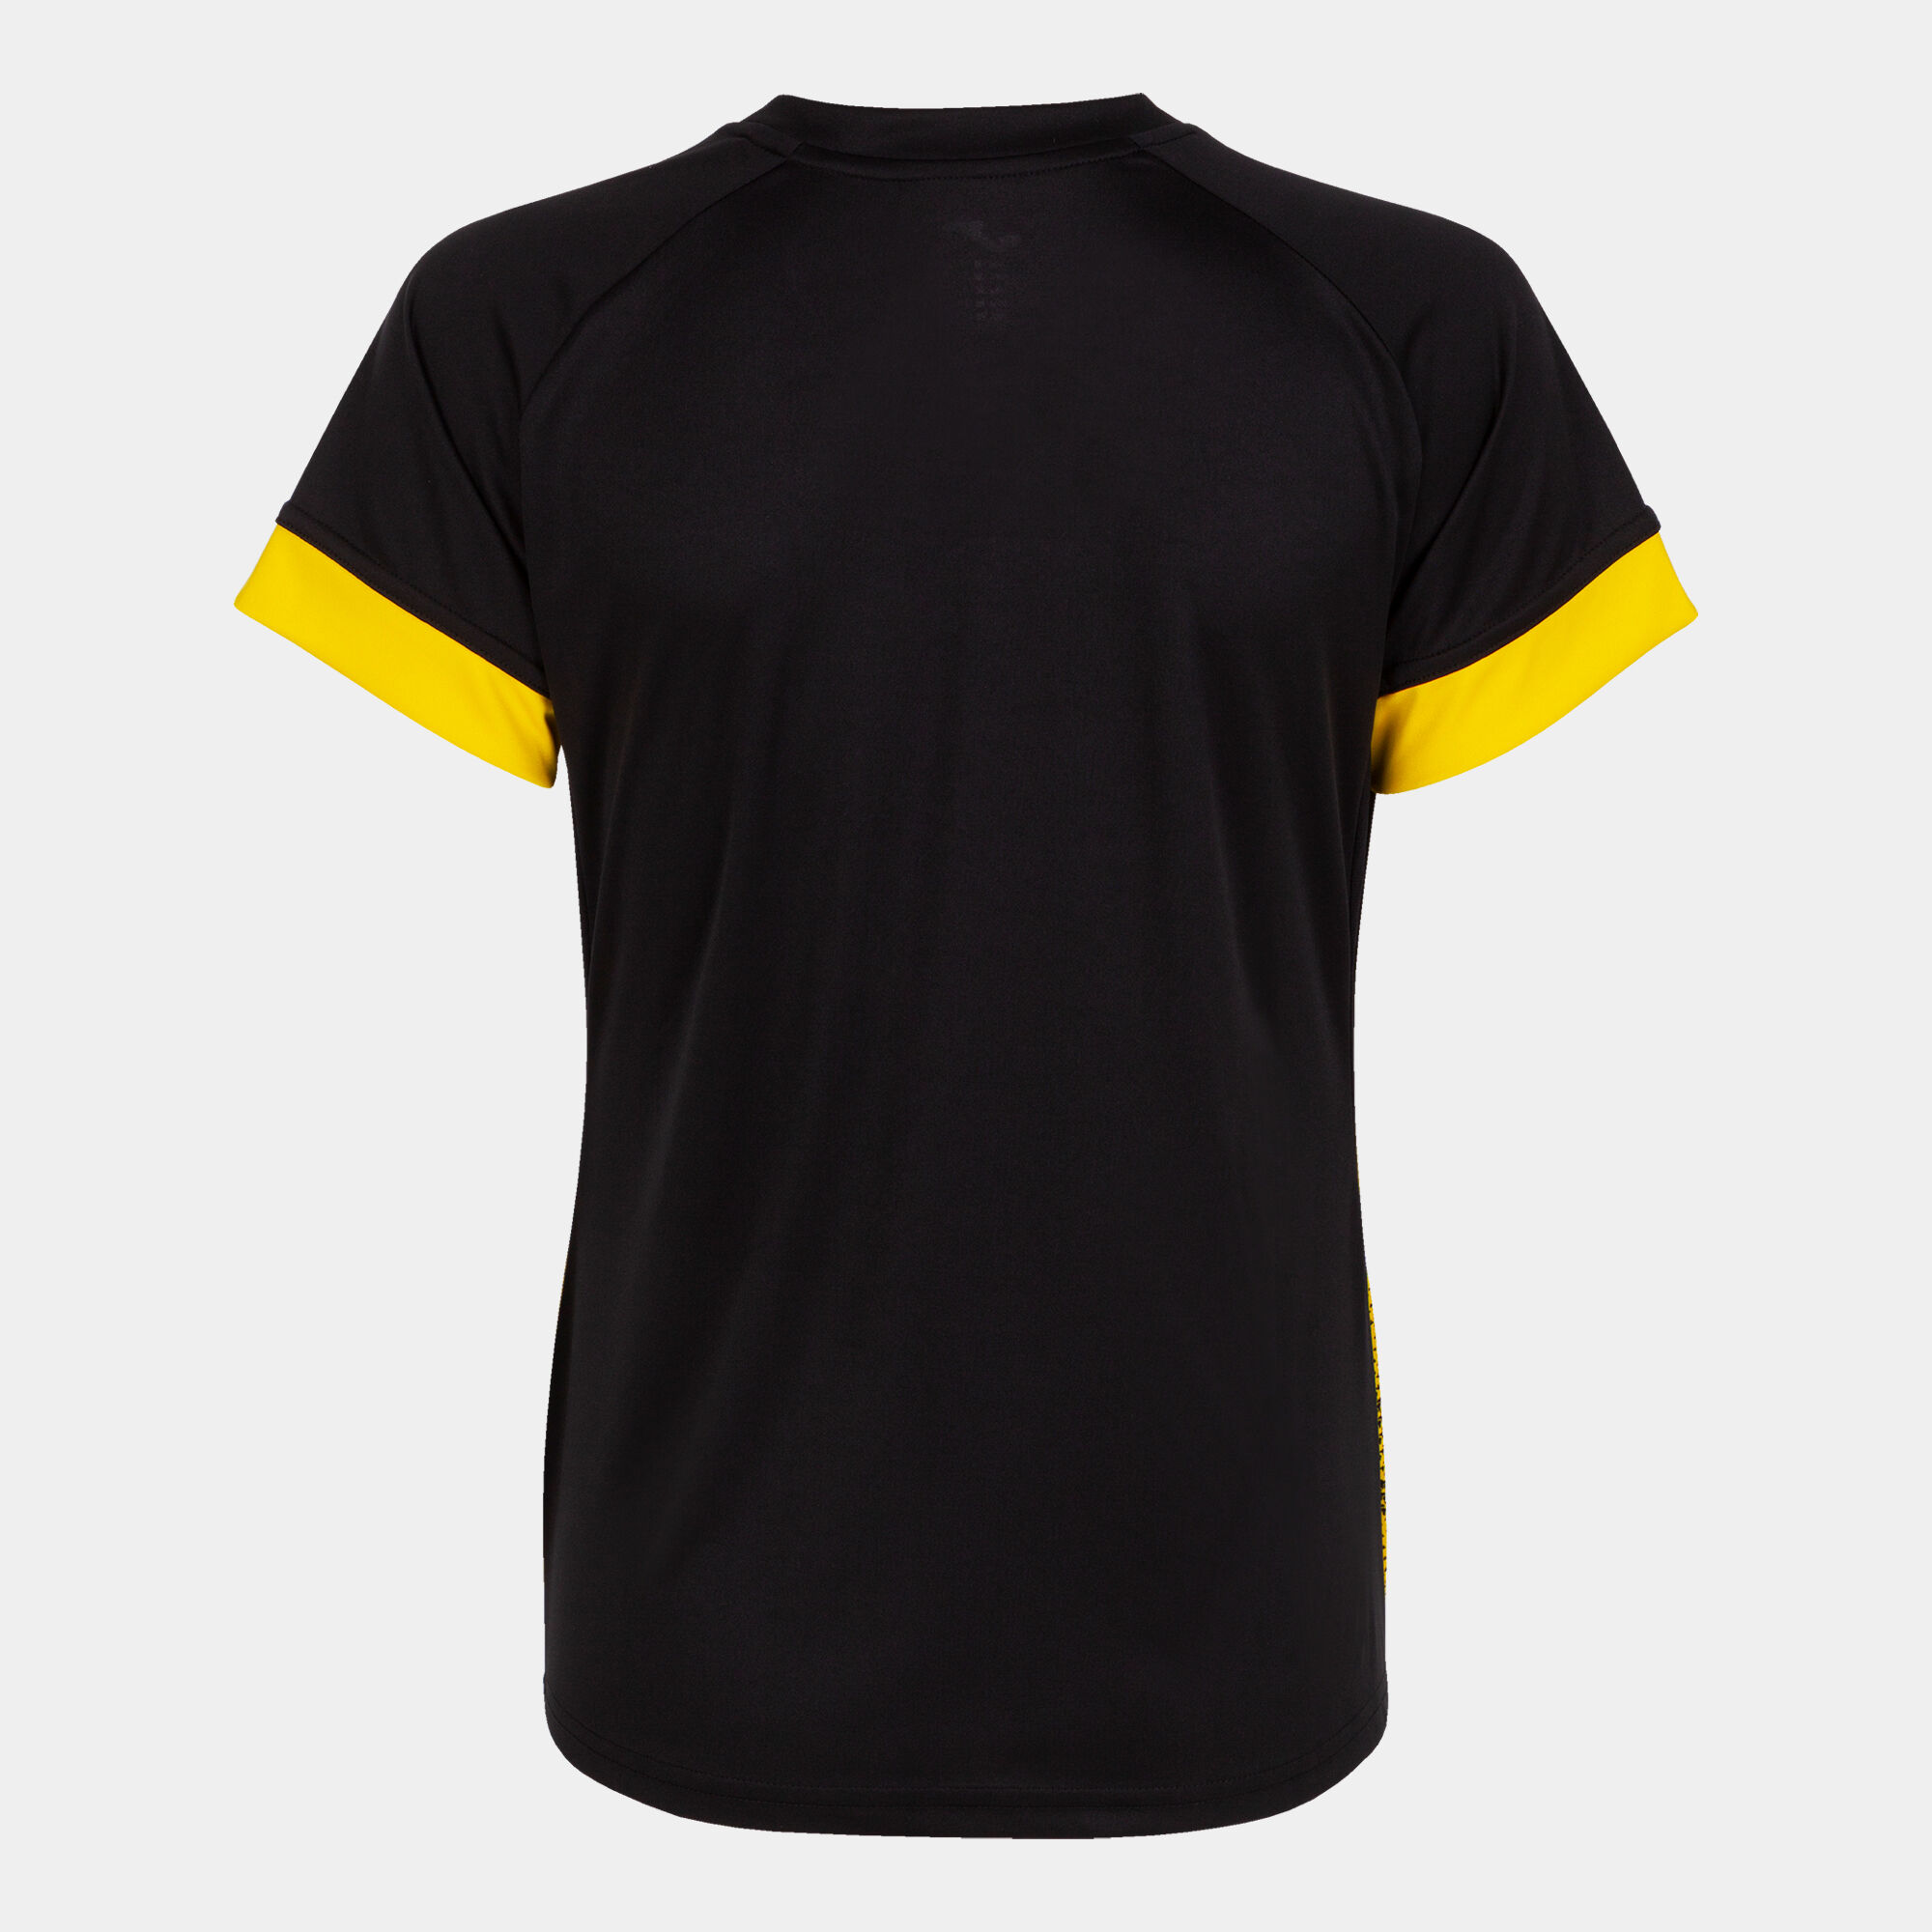 Camiseta manga corta mujer Supernova III negro amarillo